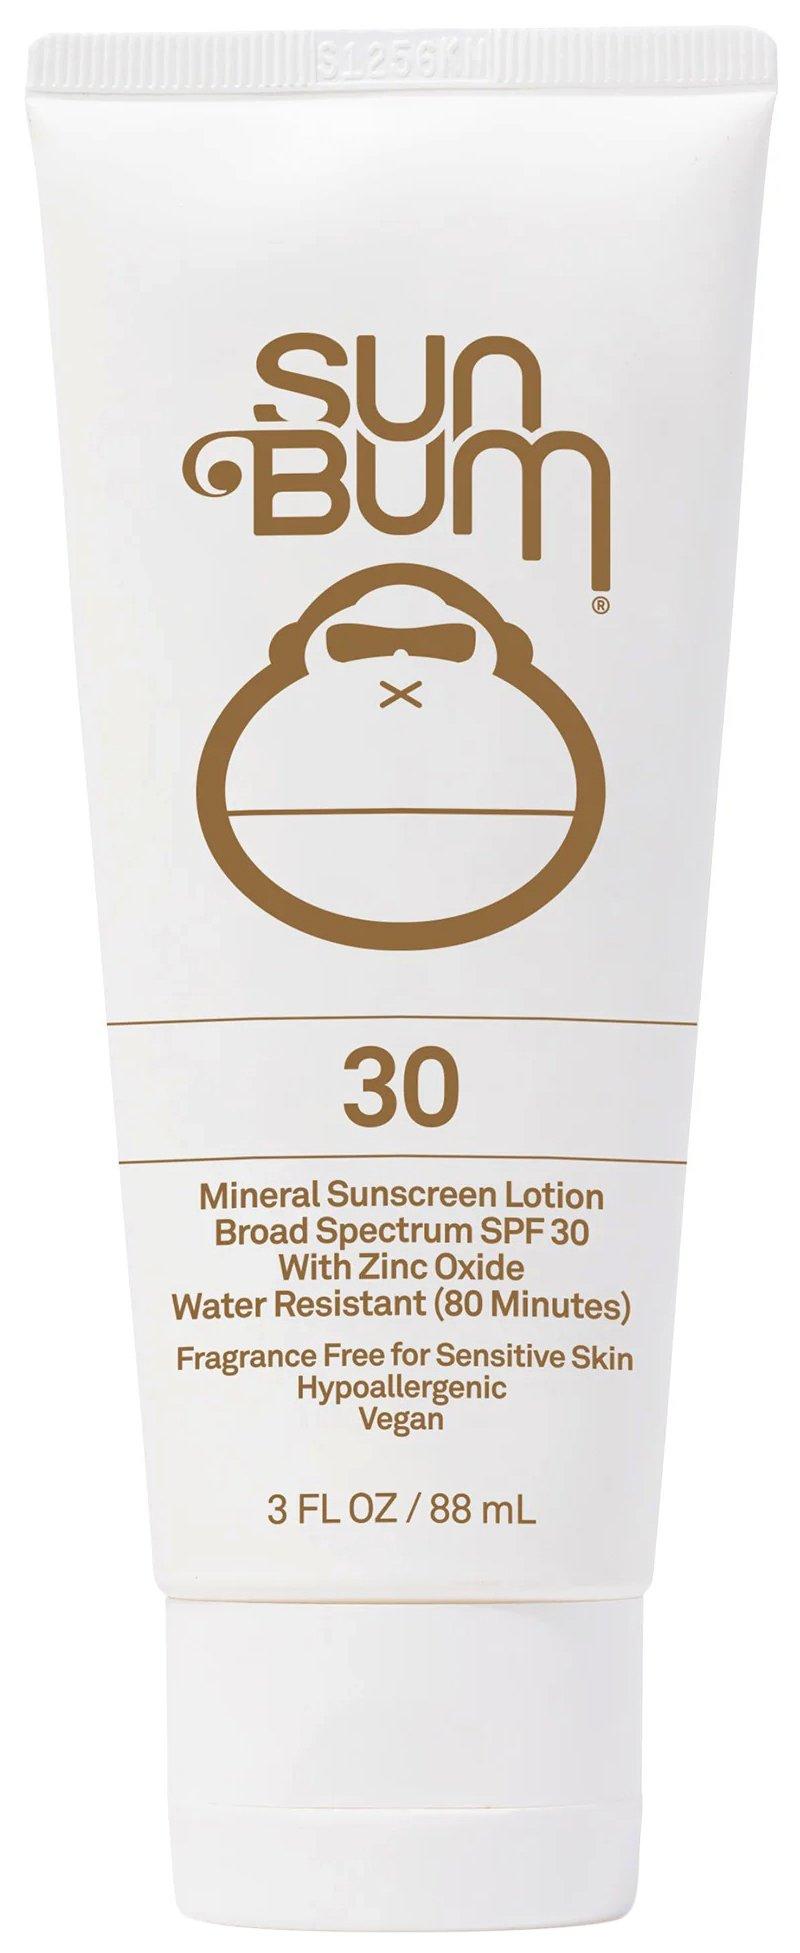 Sun Bum SPF 30 Zinc Oxide Mineral Sunscreen Lotion